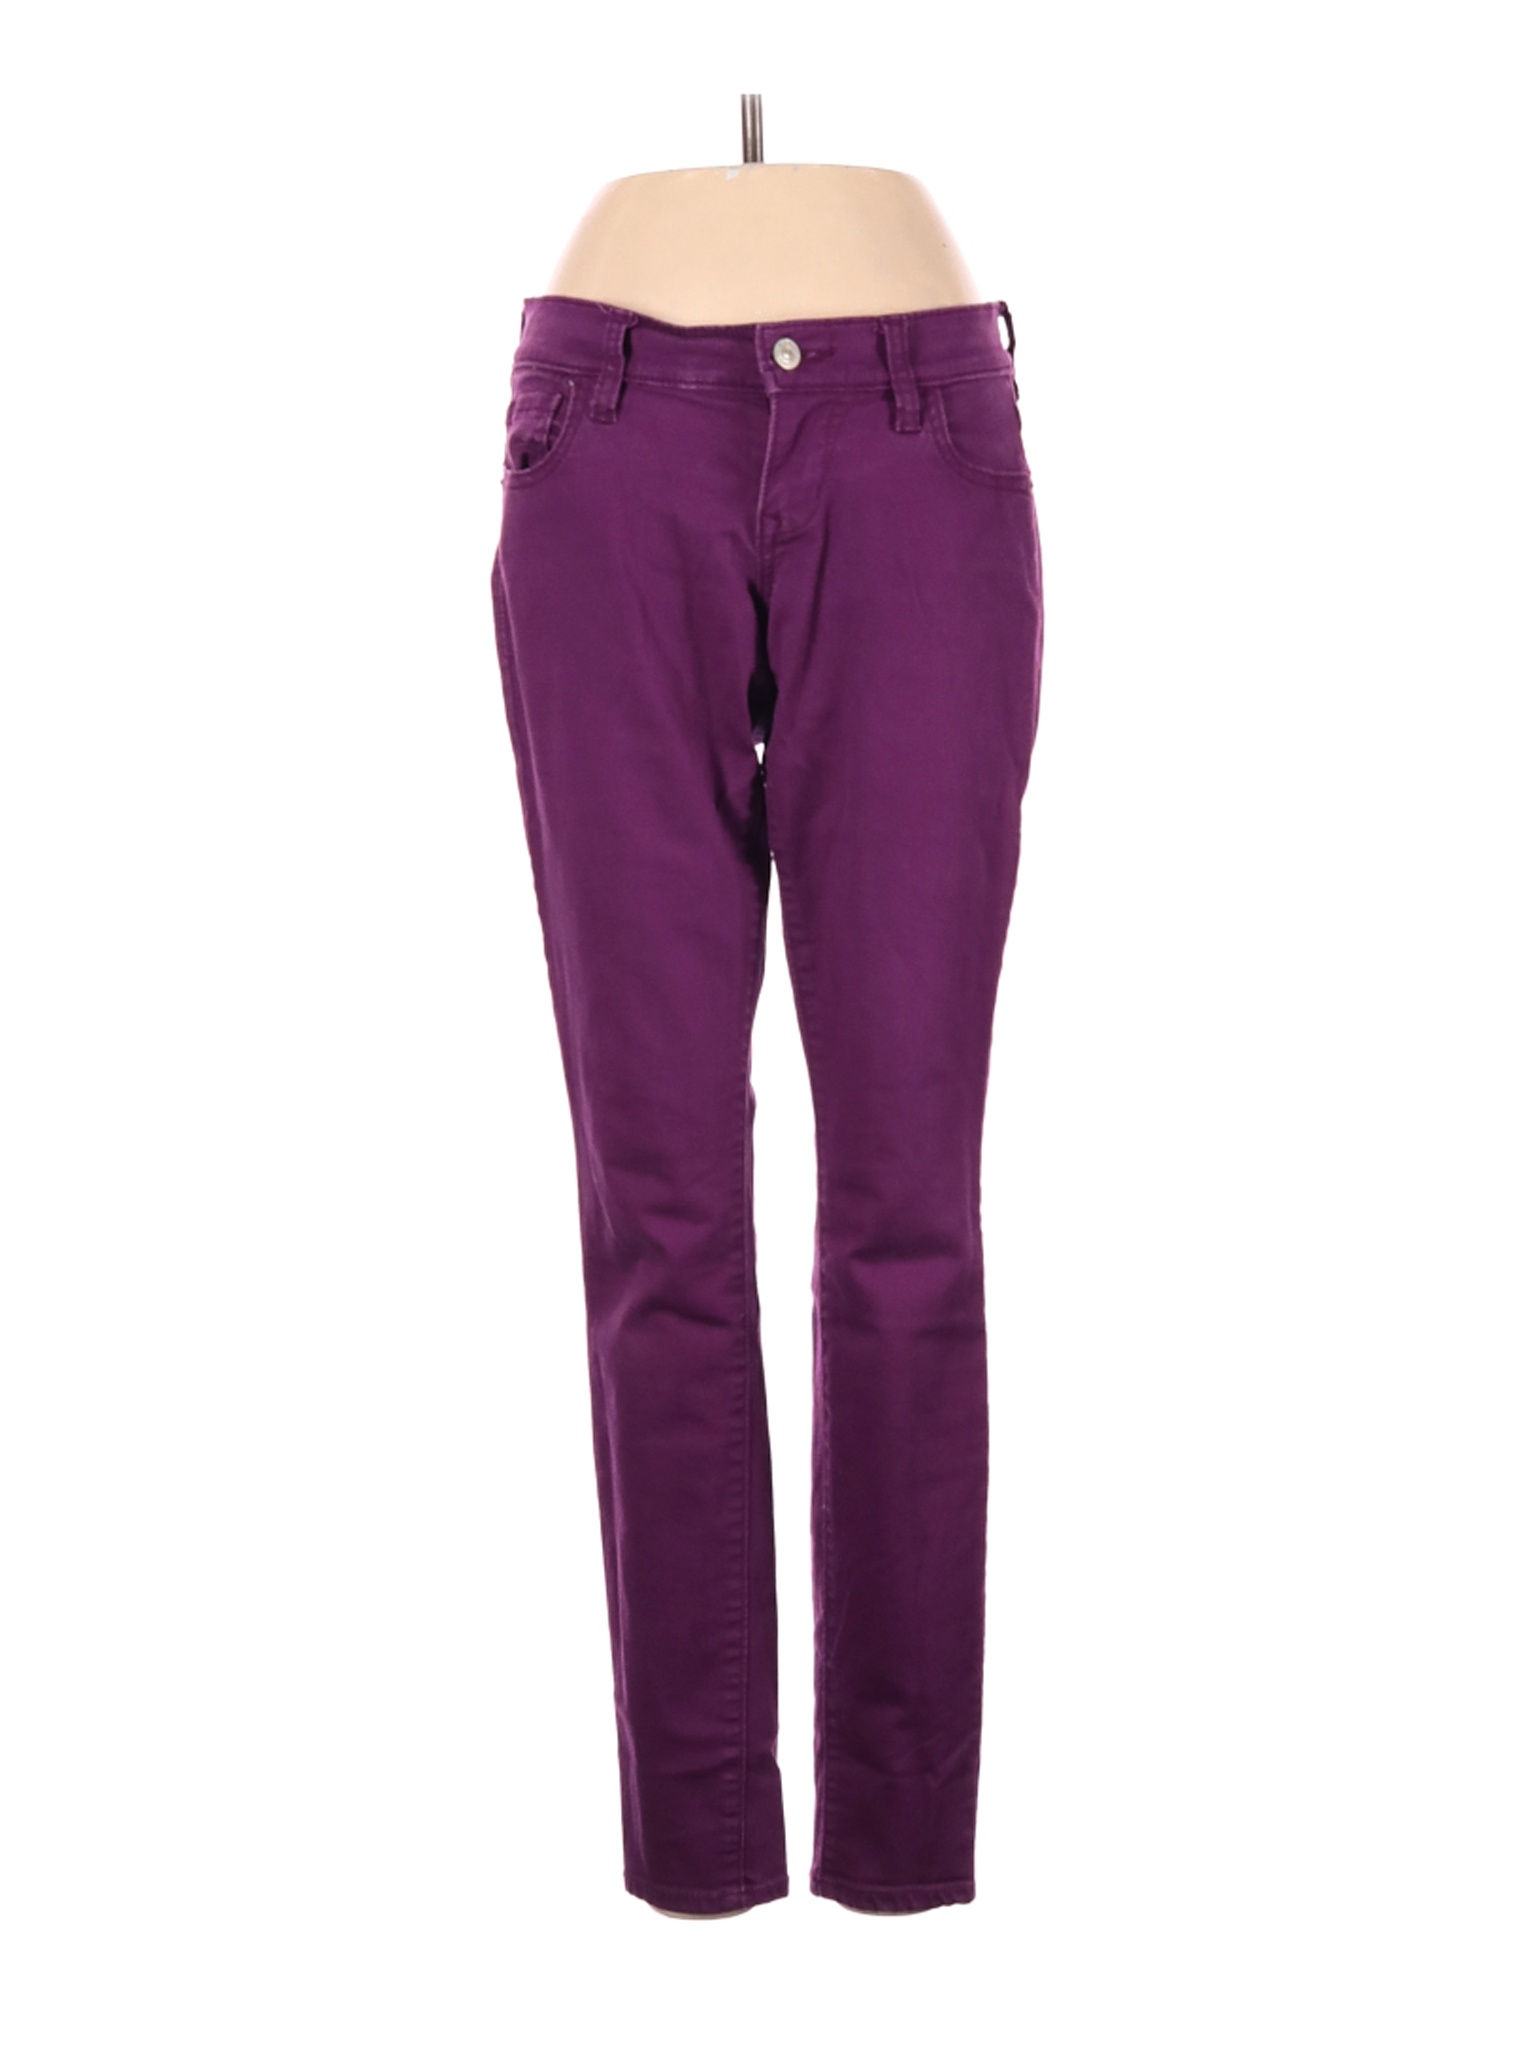 Old Navy Women Purple Jeans 2 | eBay